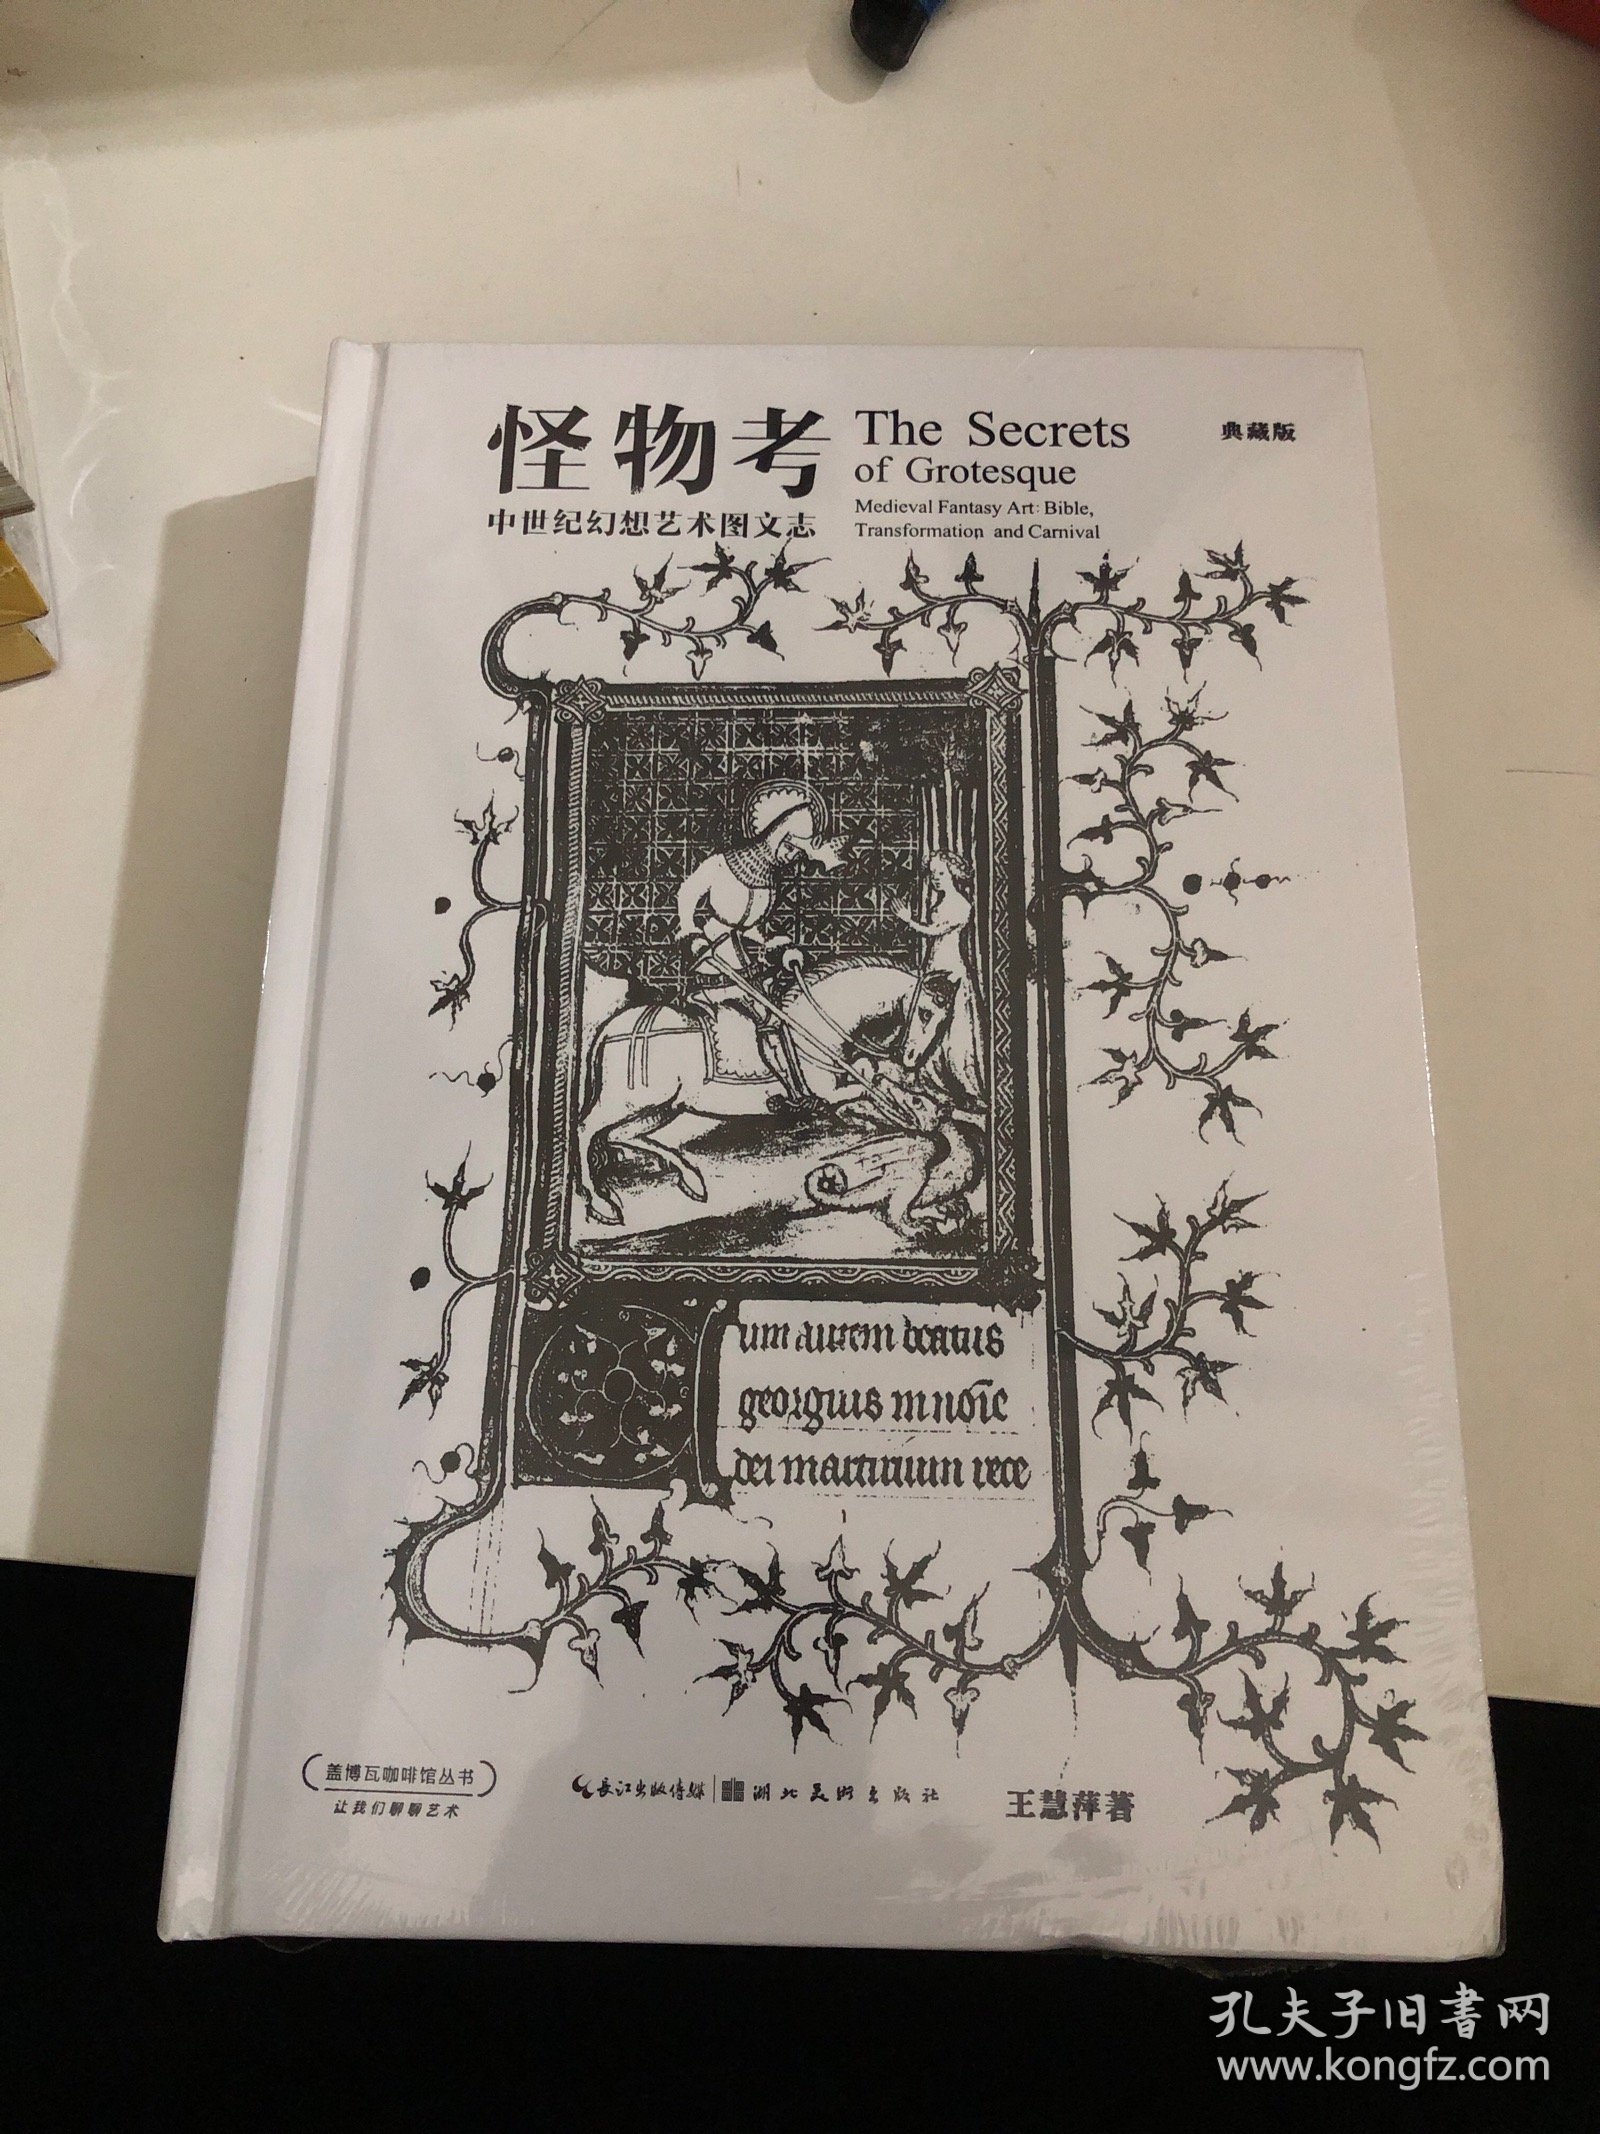 怪物考 中世纪幻想艺术图文志（典藏版）/盖博瓦咖啡馆丛书